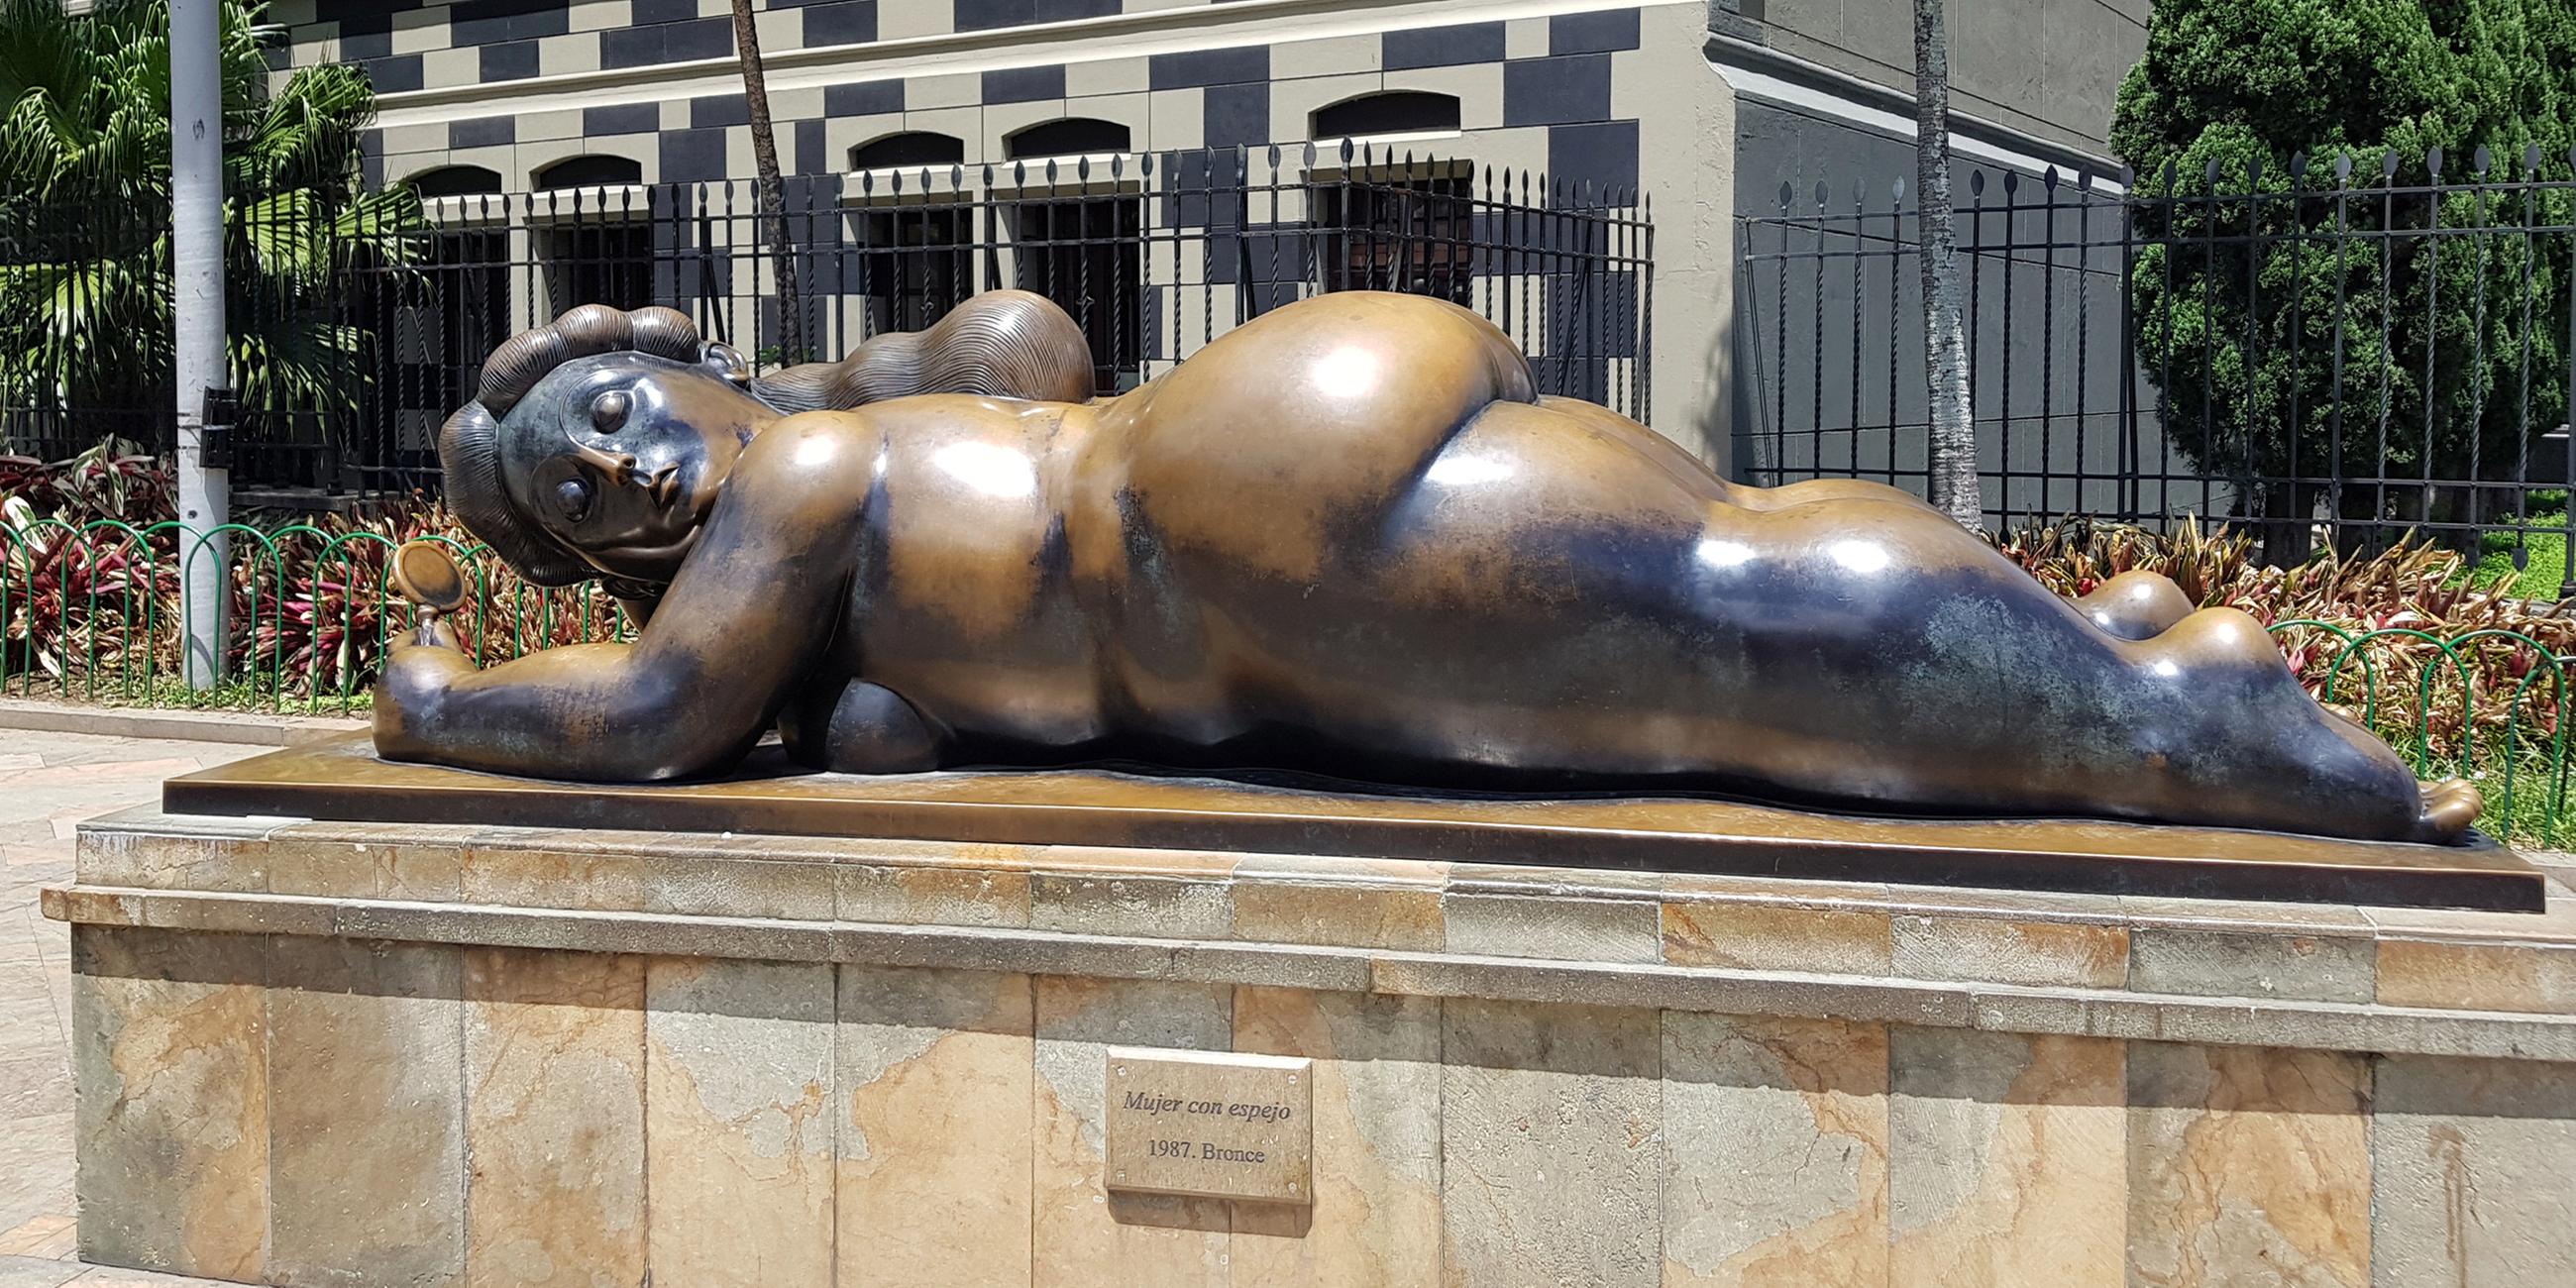 Statue namens „Frau mit Spiegel“ auf dem Botero-Platz in Medellin, Kolumbien.